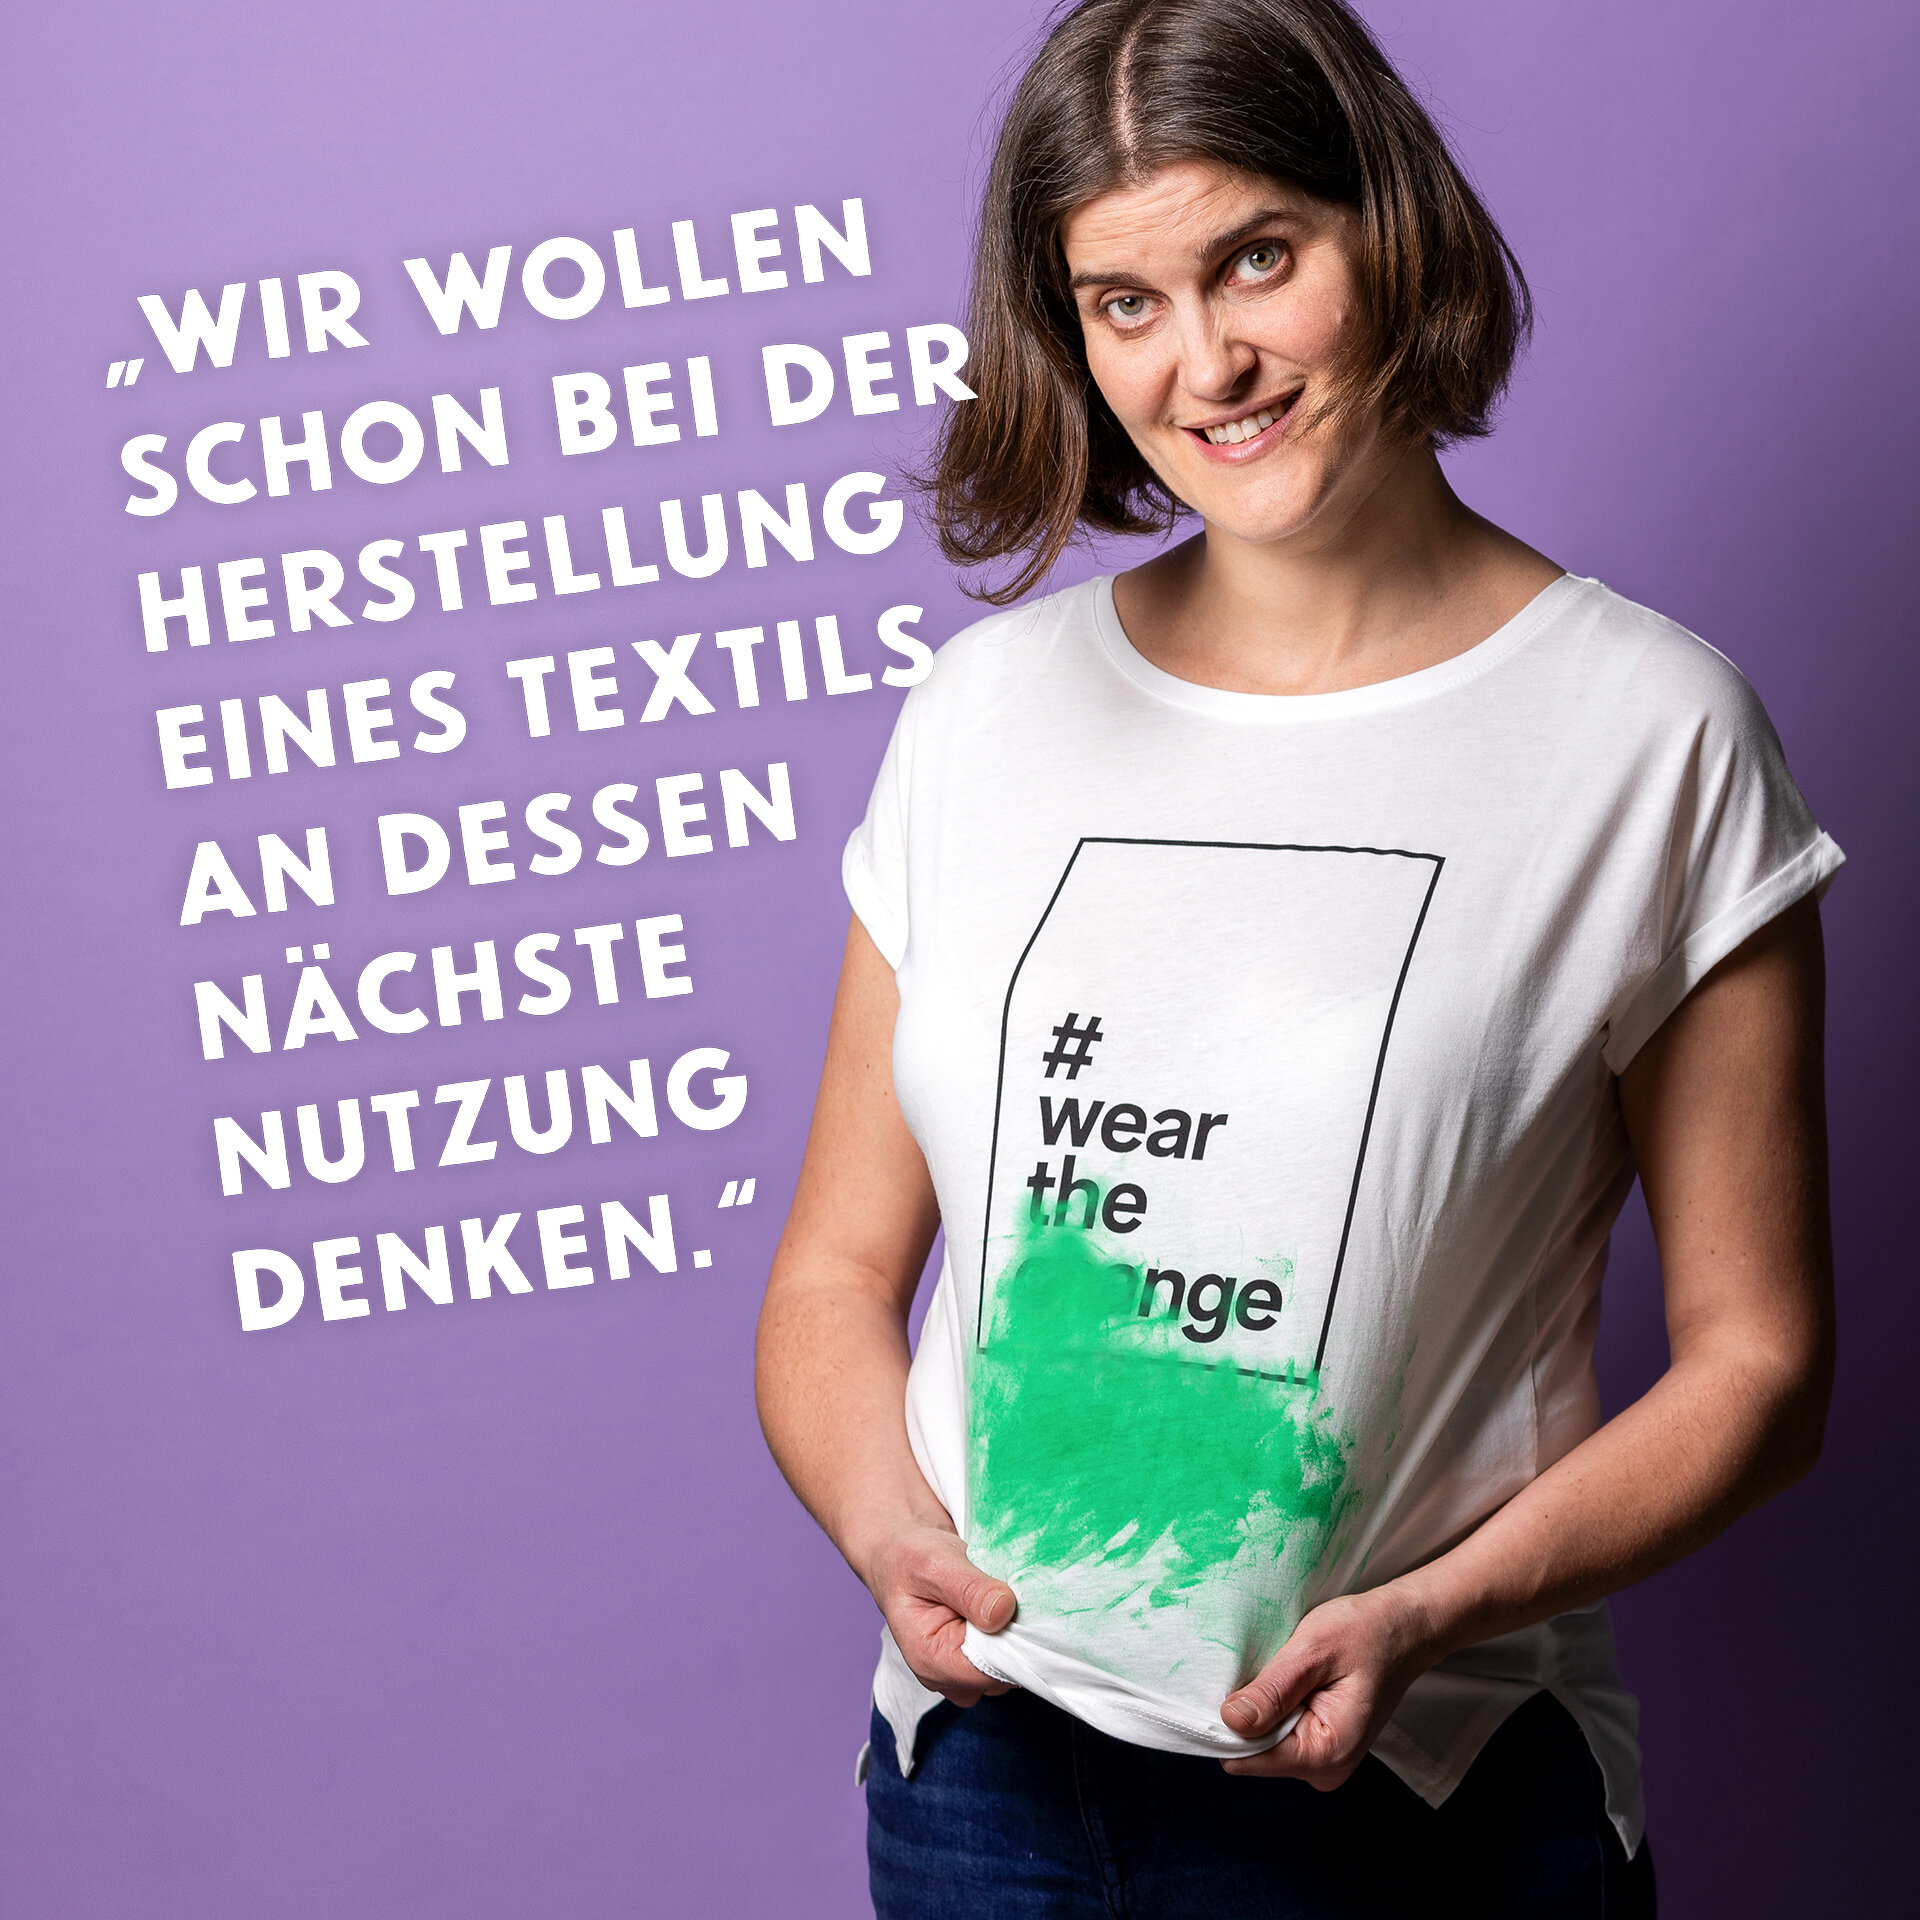 Frau stretcht ihr grün beflecktes T-Shirt. Zitat: „ Wir wollen schon bei der Herstellung eines Textils an dessen nächste Nutzung denken.“